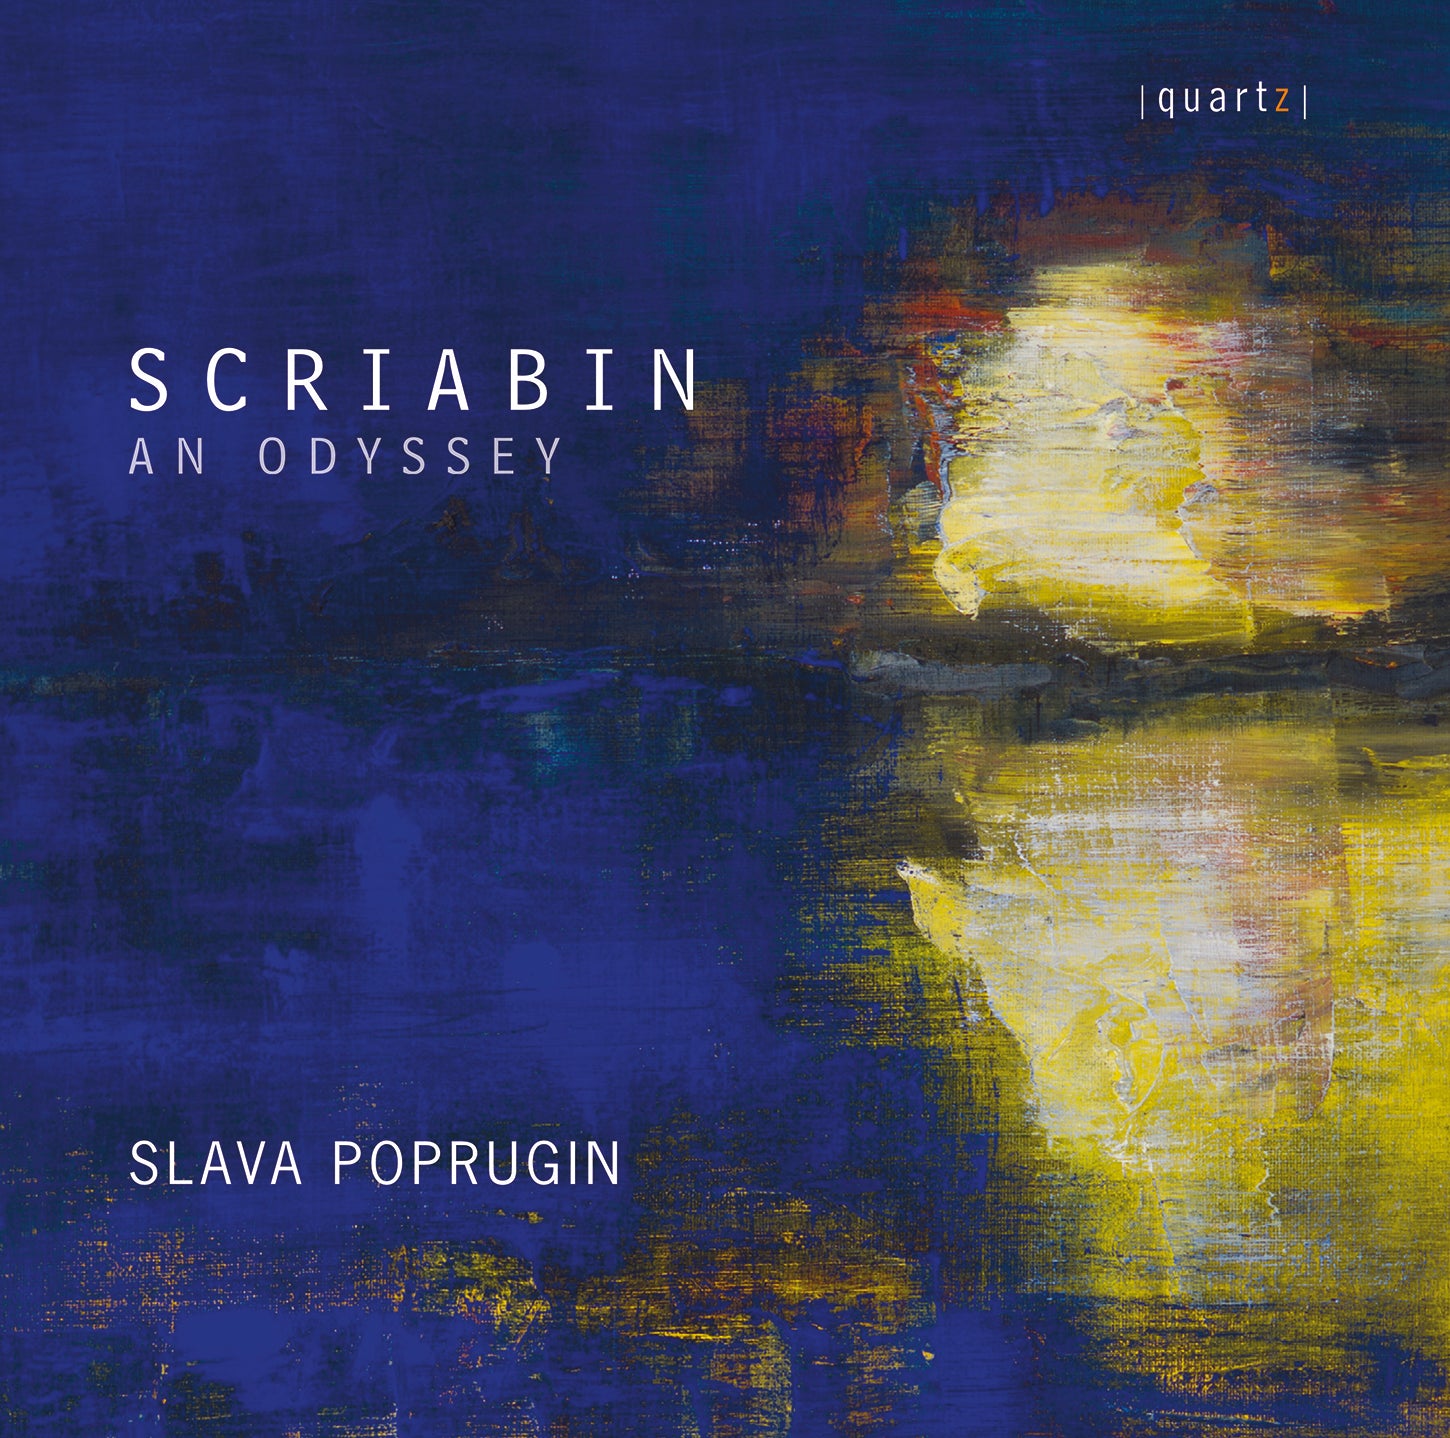 Scriabin: An Odyssey